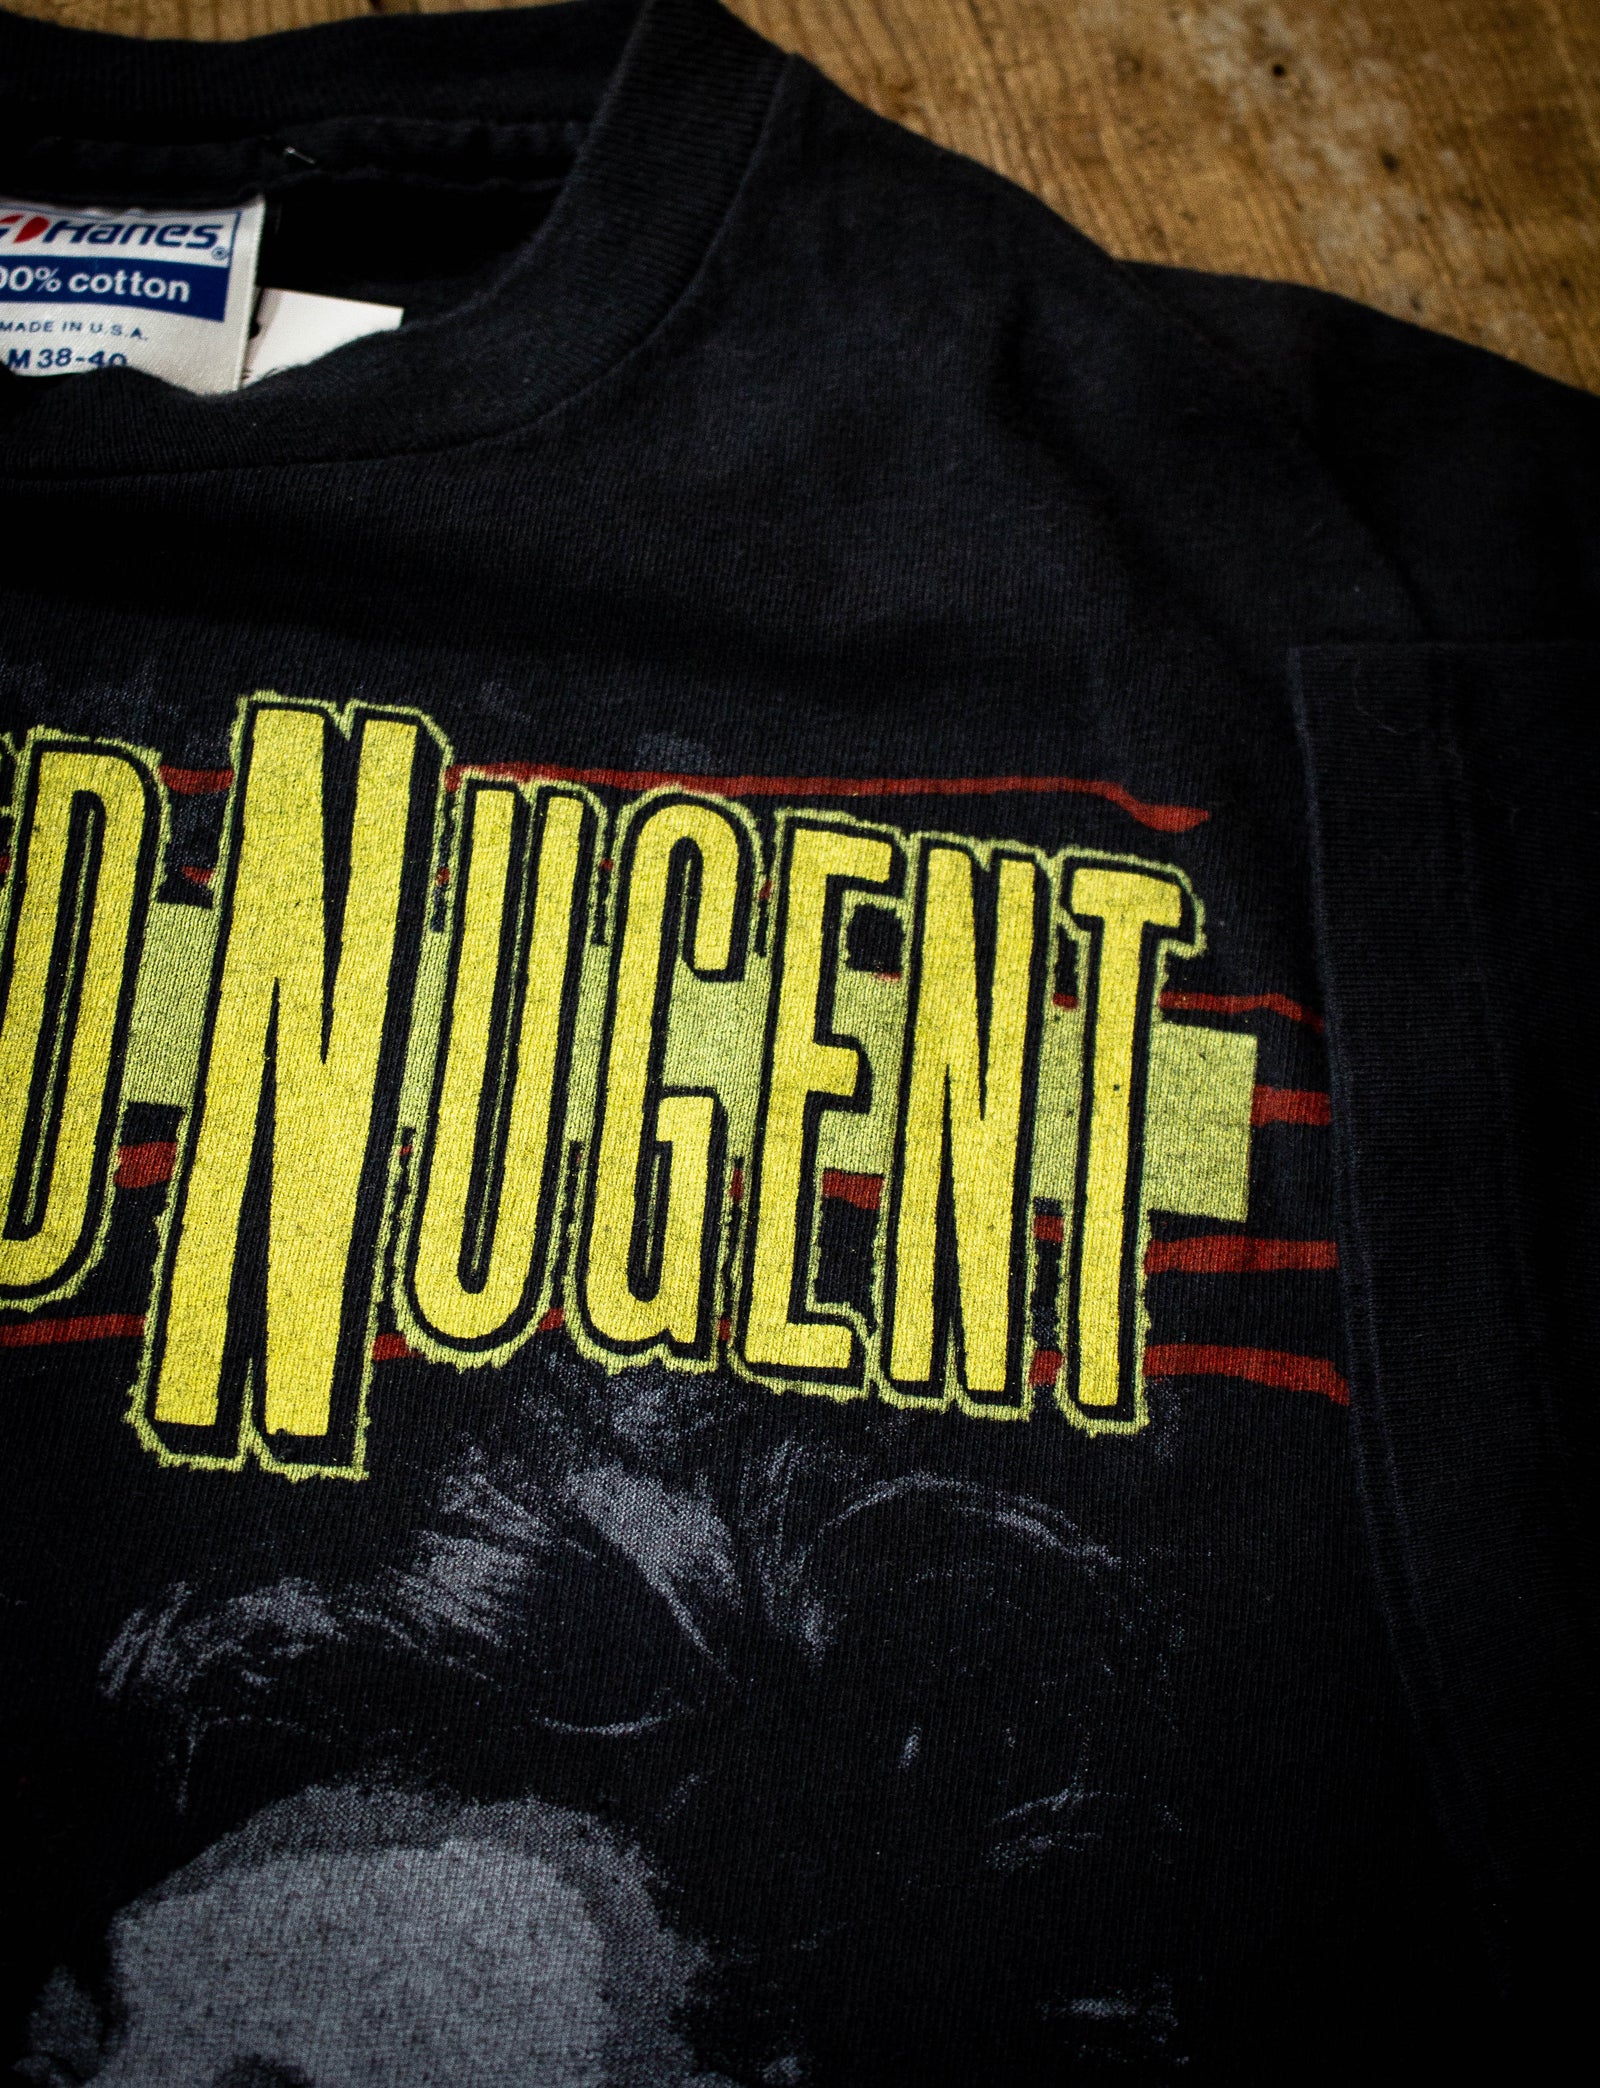 Vintage 1986 Ted Nugent Little Miss Dangerous Tour Concert T Shirt S/M